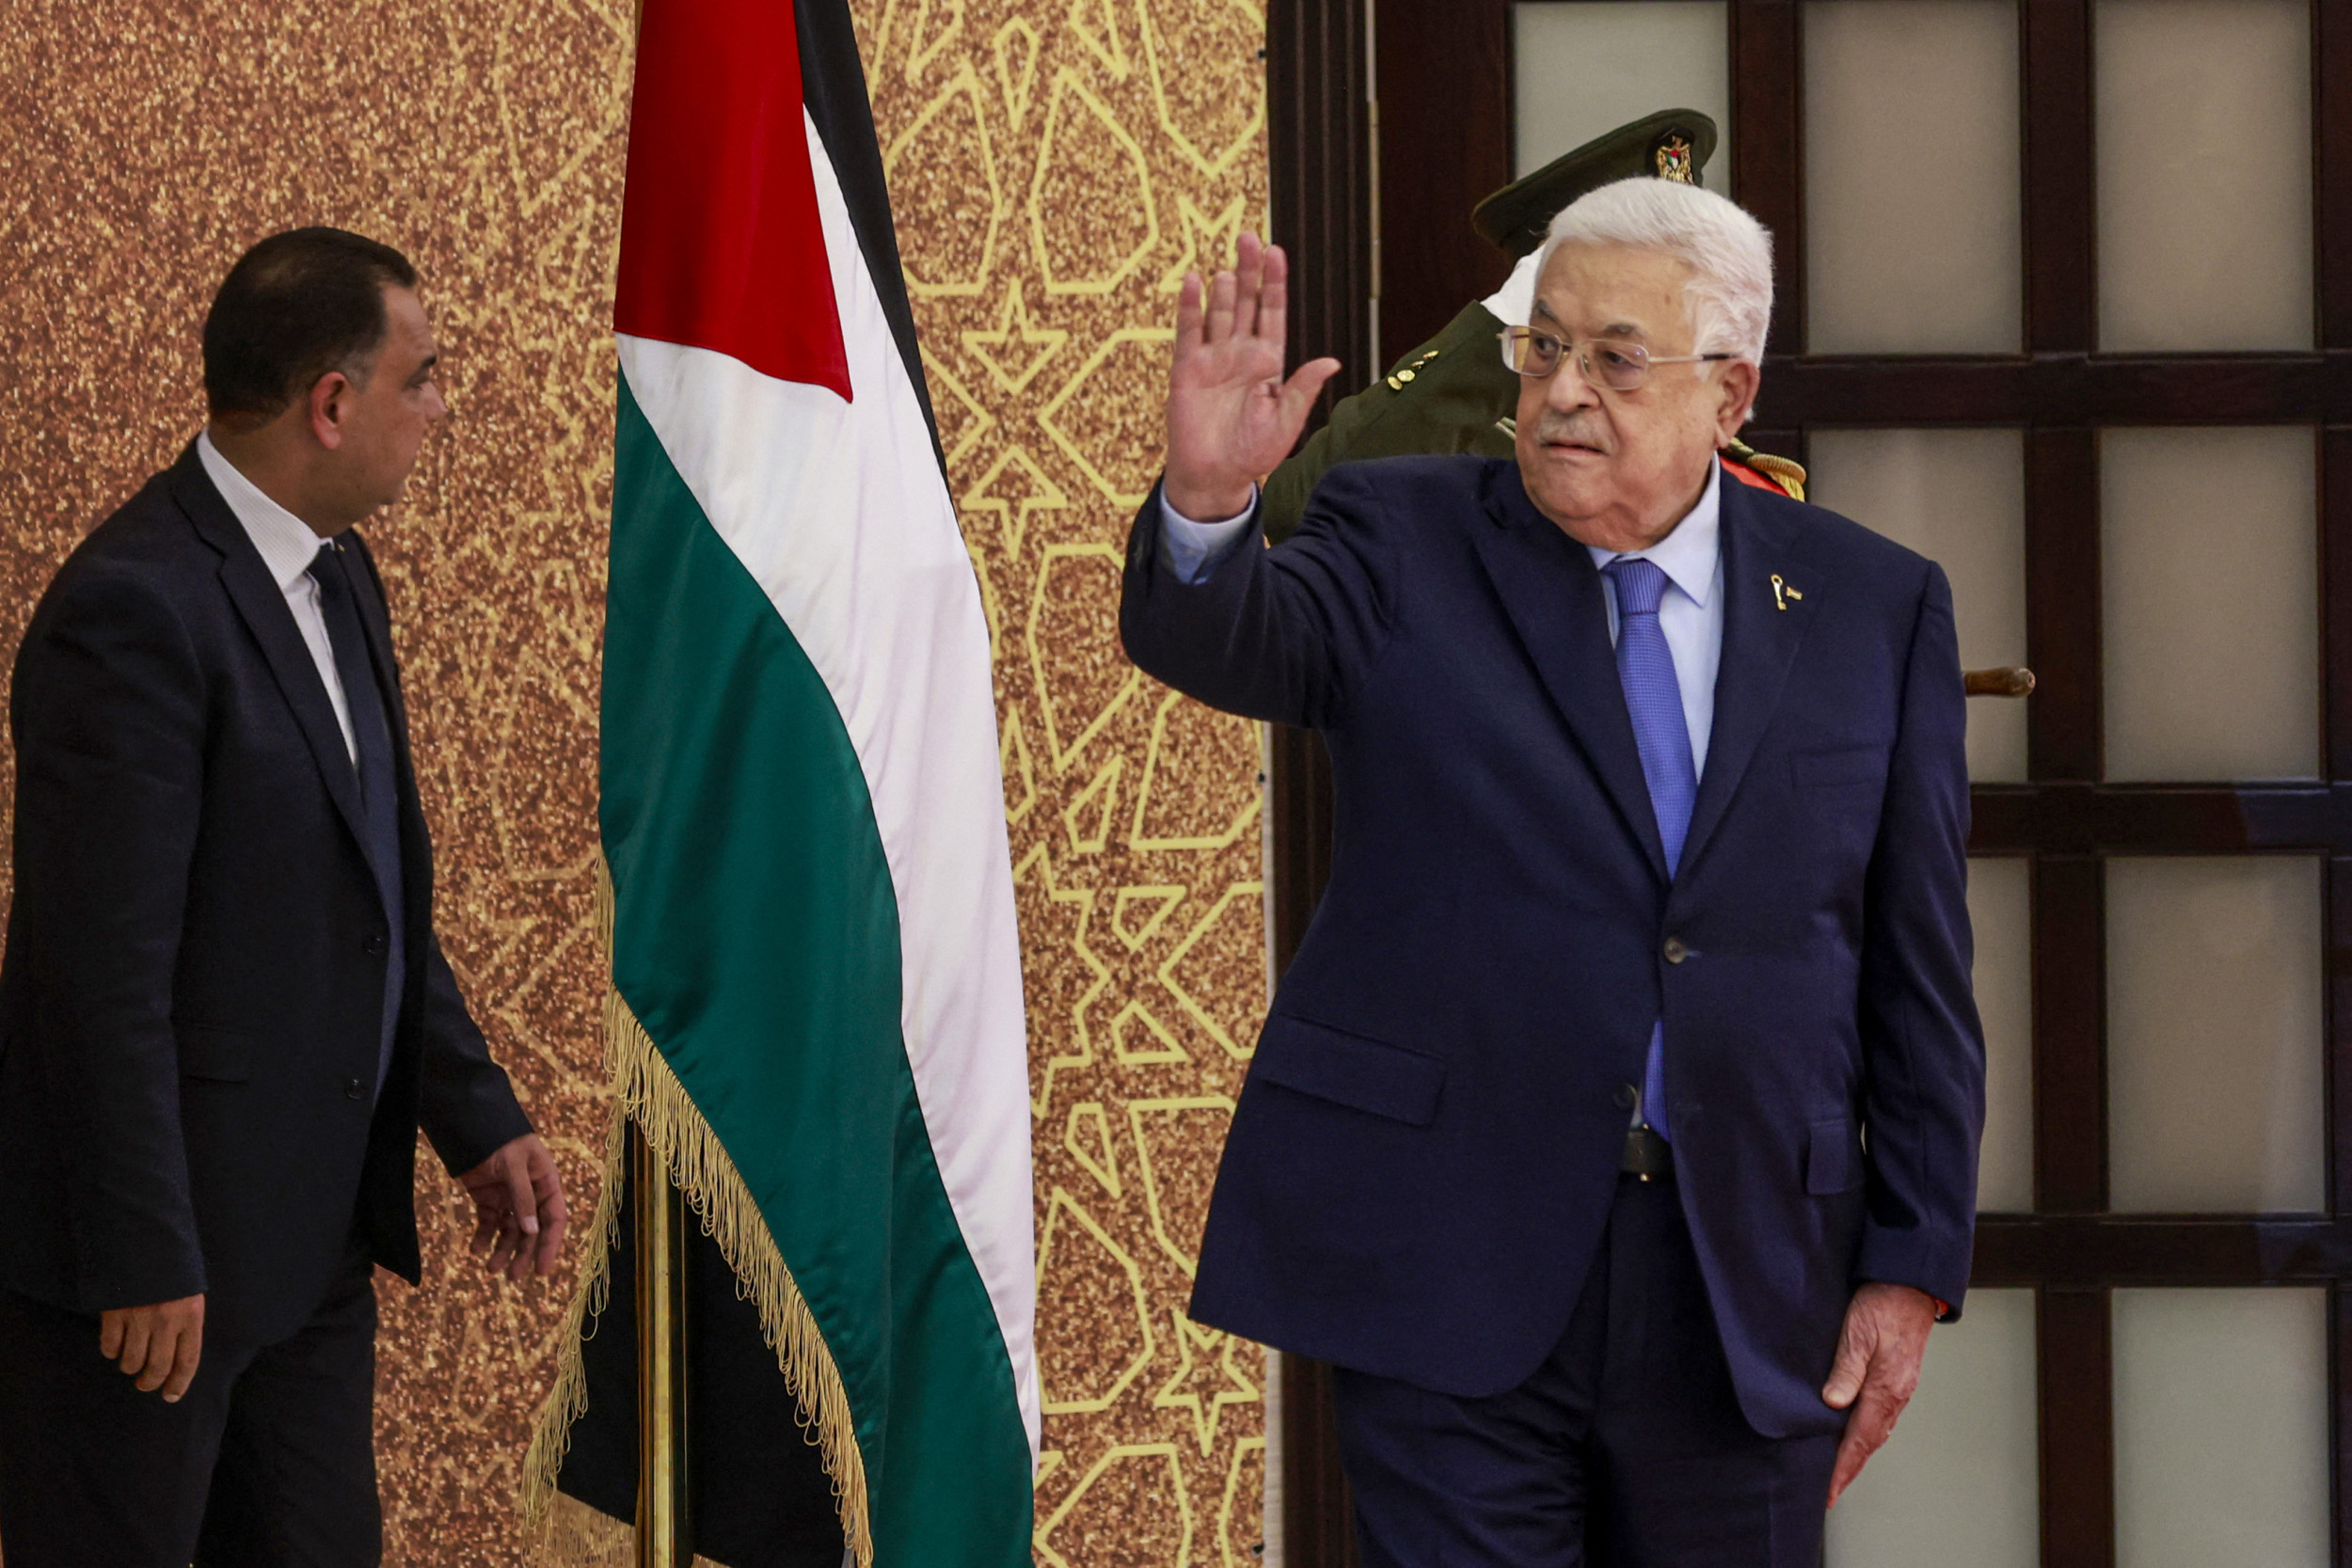 Palestinian leadership in crisis as Gaza war rages